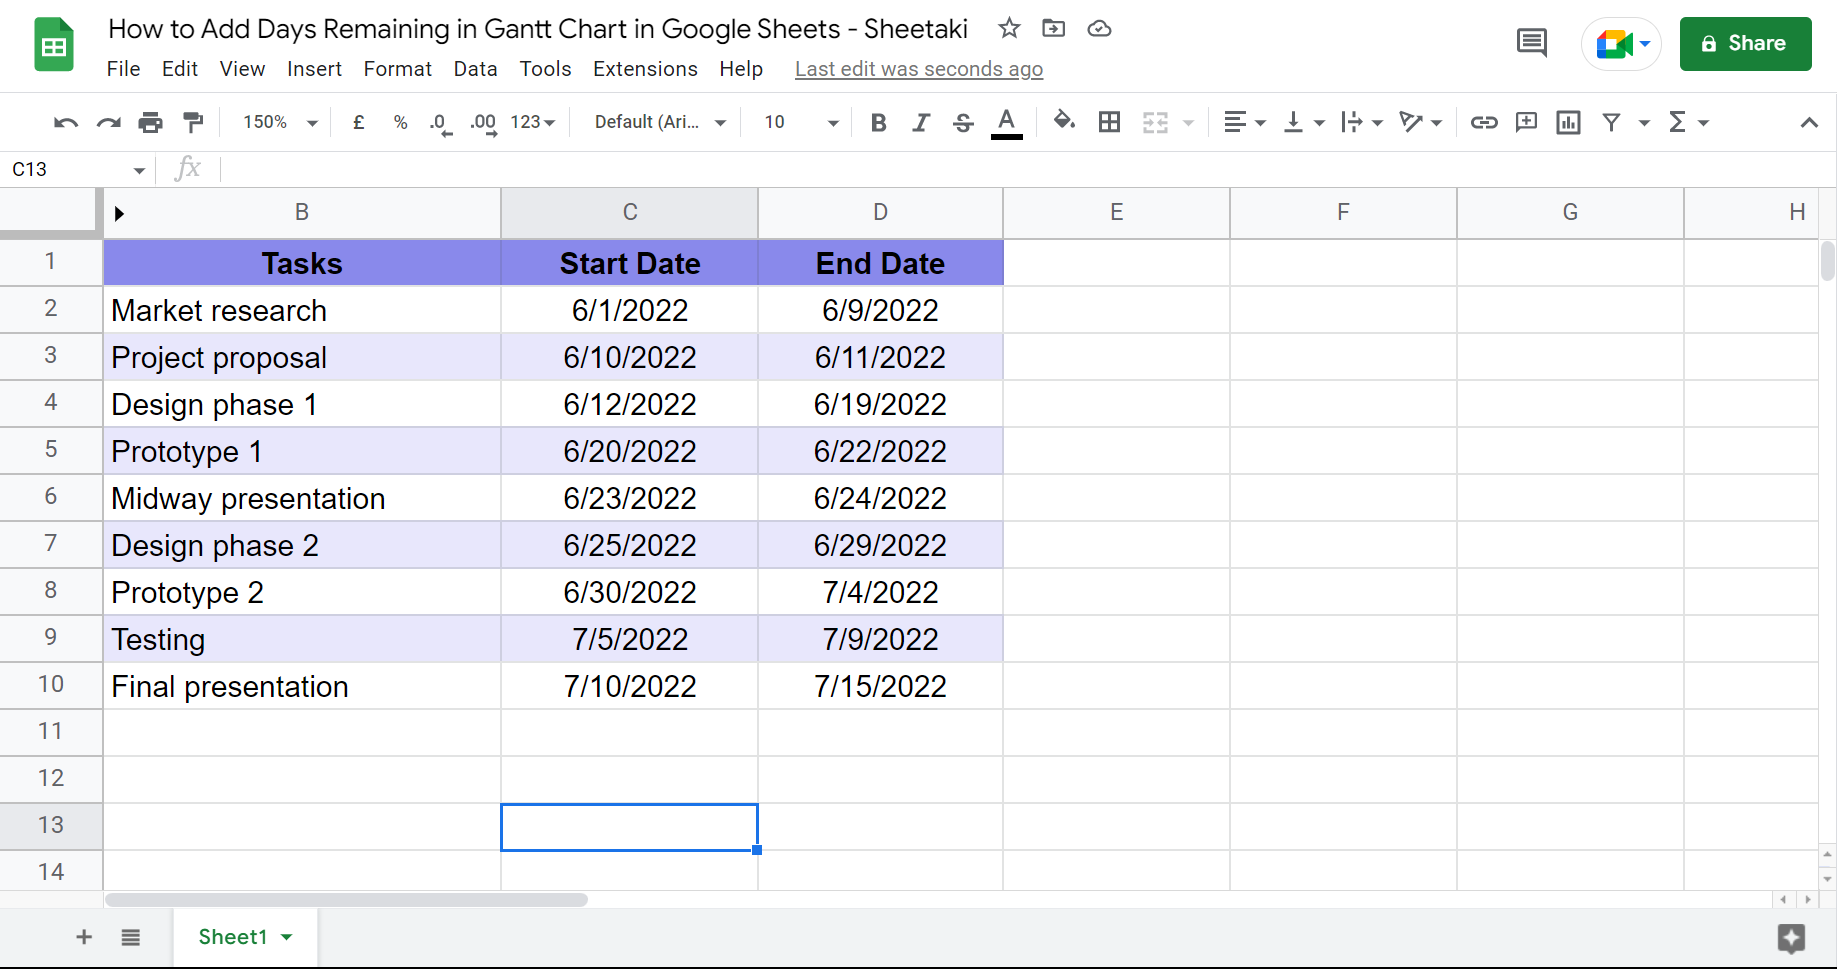 Dataset to make a Gantt chart